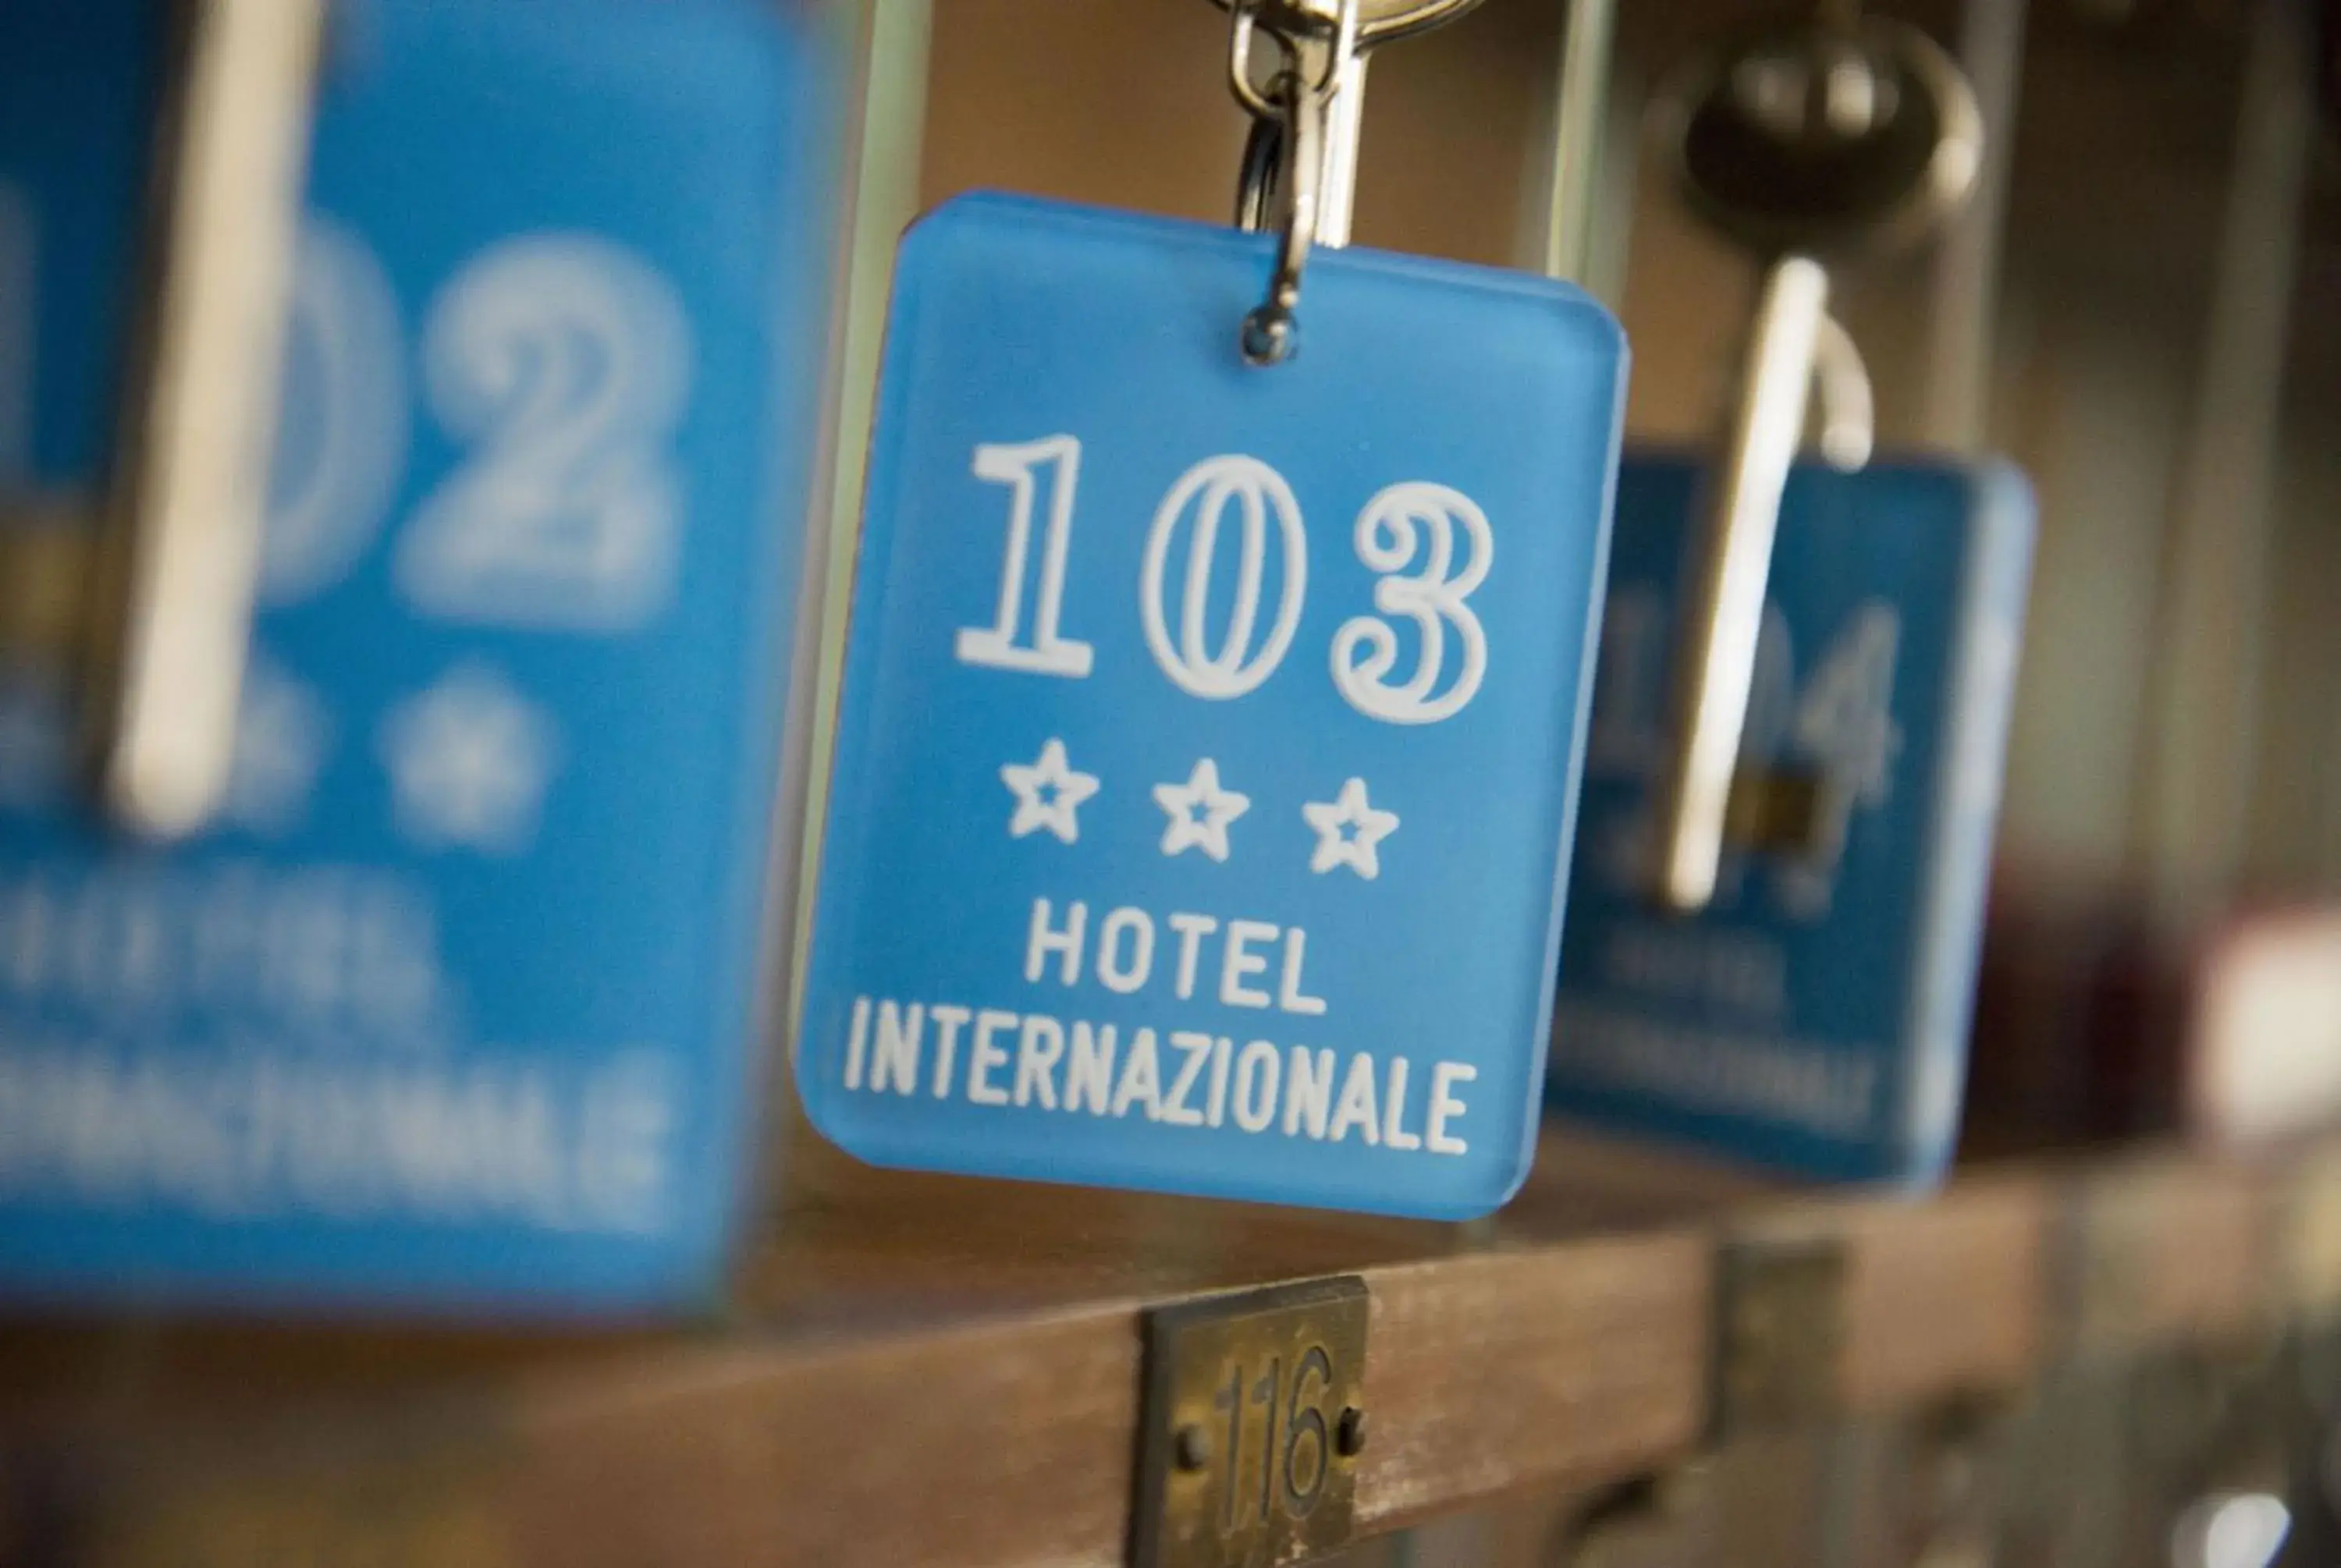 Decorative detail in Hotel Internazionale